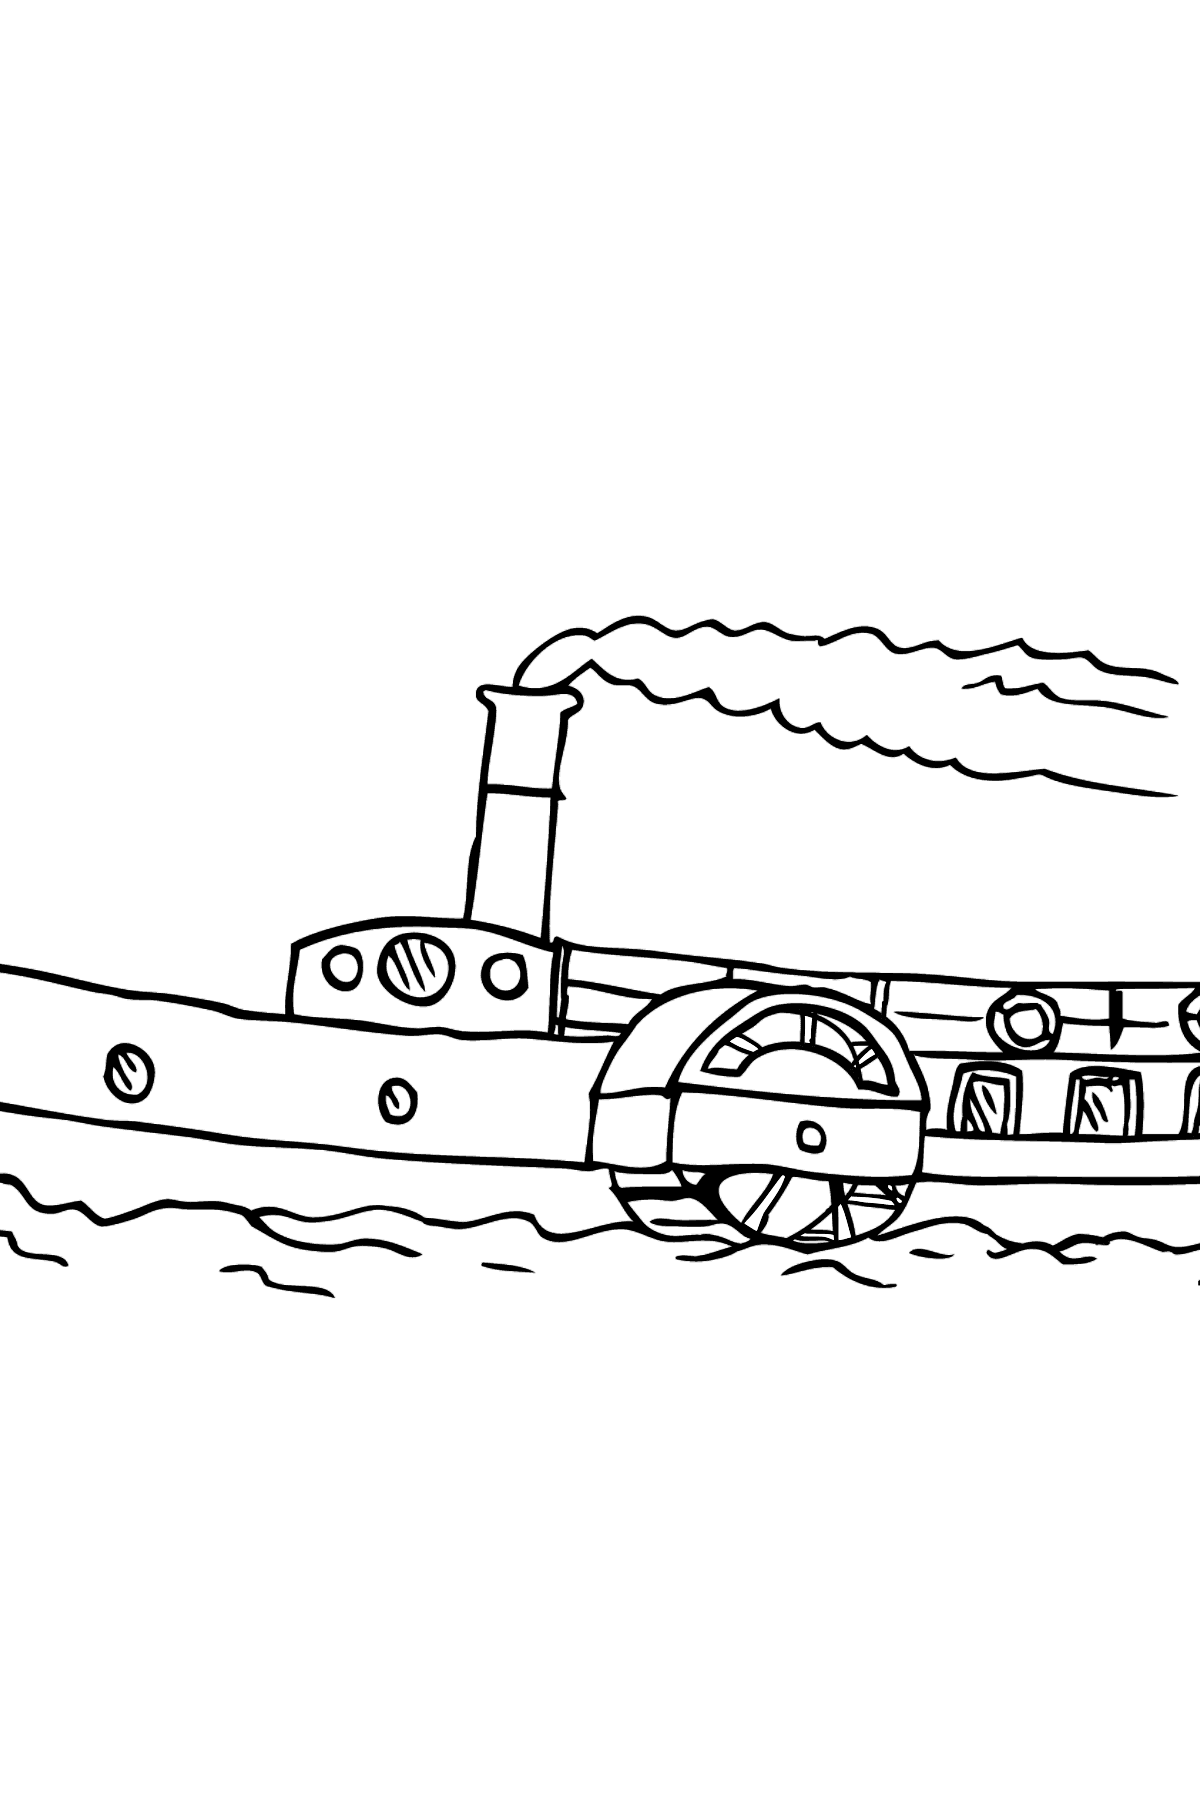 Desenho de navio com roda de pás para colorir - Imagens para Colorir para Crianças